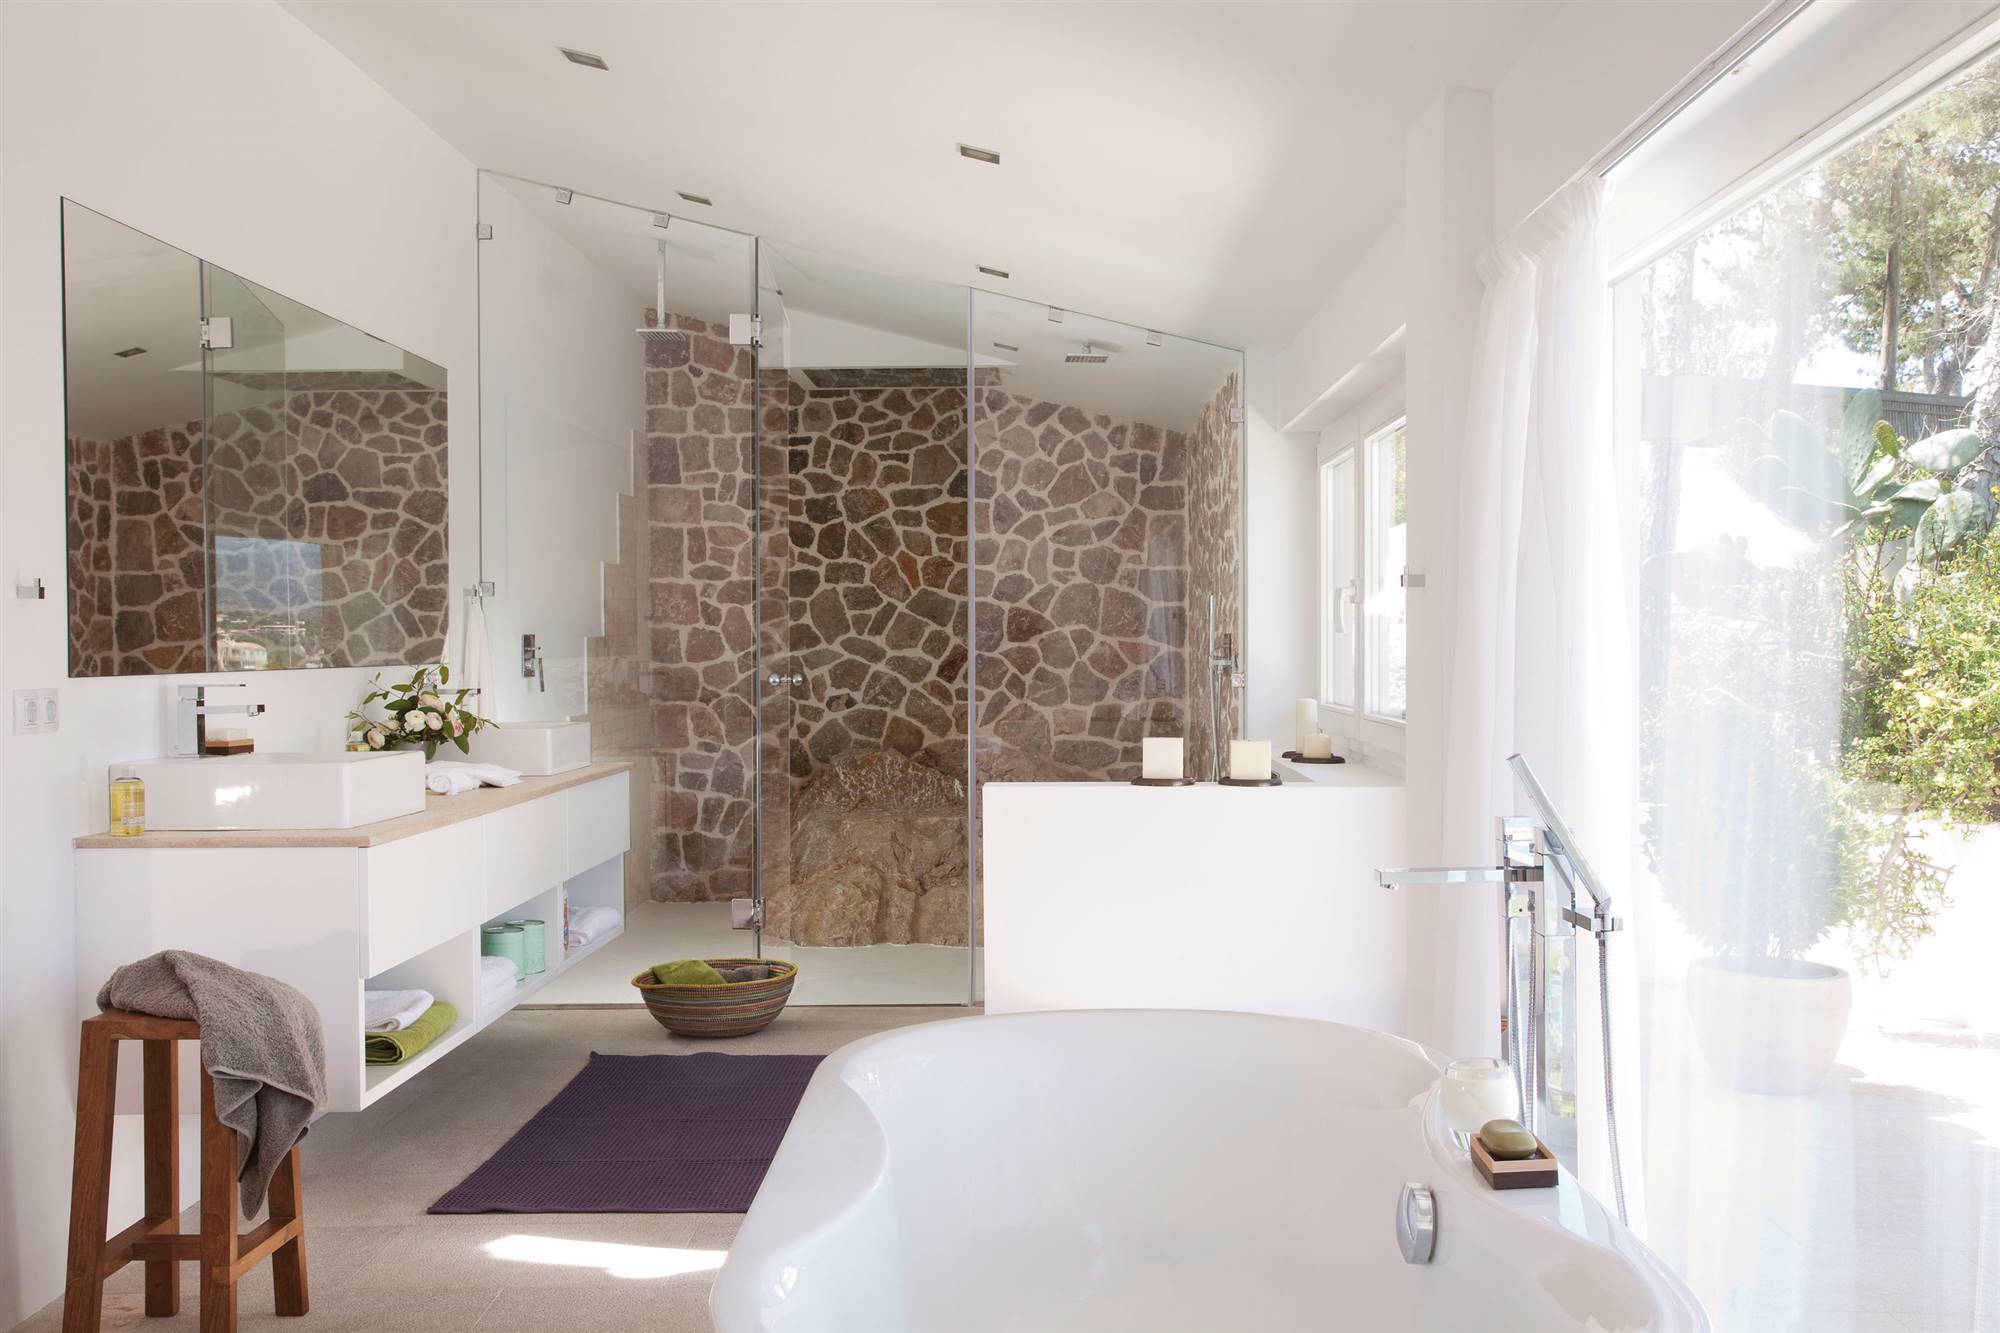 Baño grande de estilo moderno con pared de piedra en la ducha y bañera exenta.